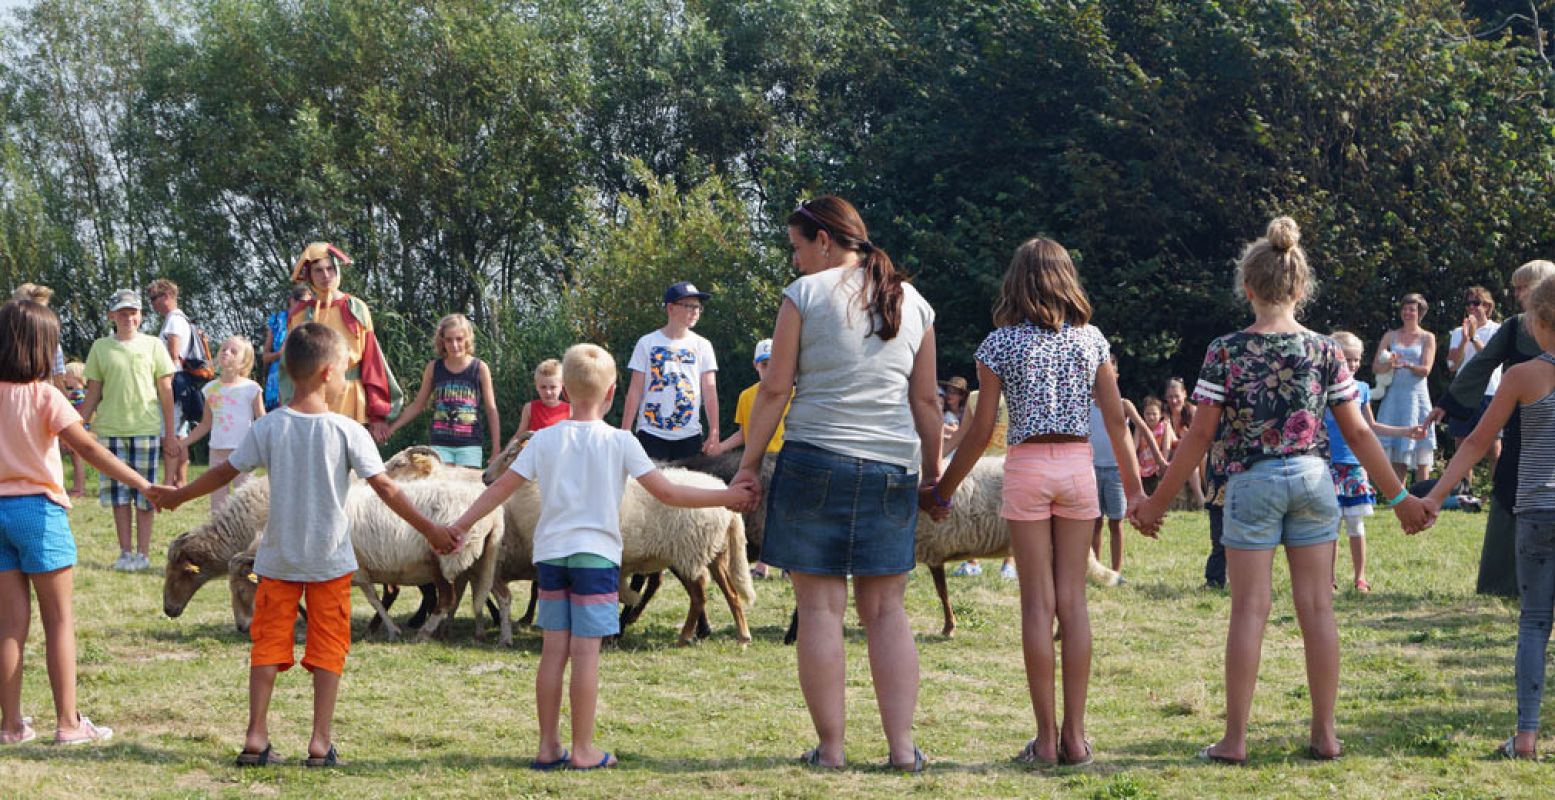 Het publiek mag de herder helpen tijdens de demonstratie schapen drijven. Foto: DagjeWeg.NL